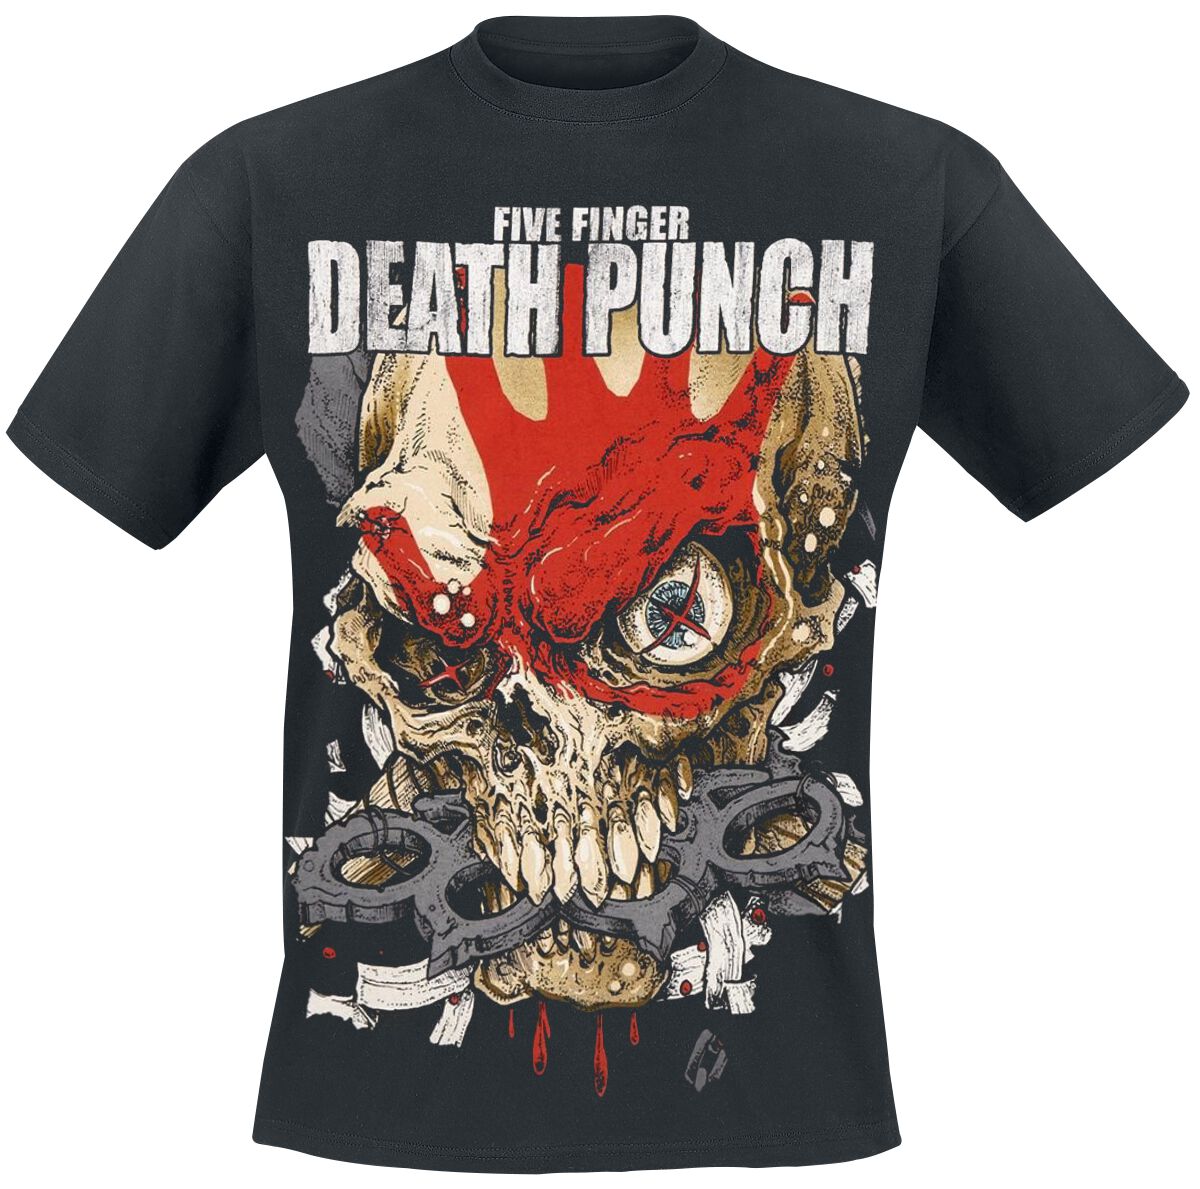 Five Finger Death Punch T-Shirt - Knucklehead Kopia Exploded - S bis XXL - für Männer - Größe XXL - schwarz  - Lizenziertes Merchandise!